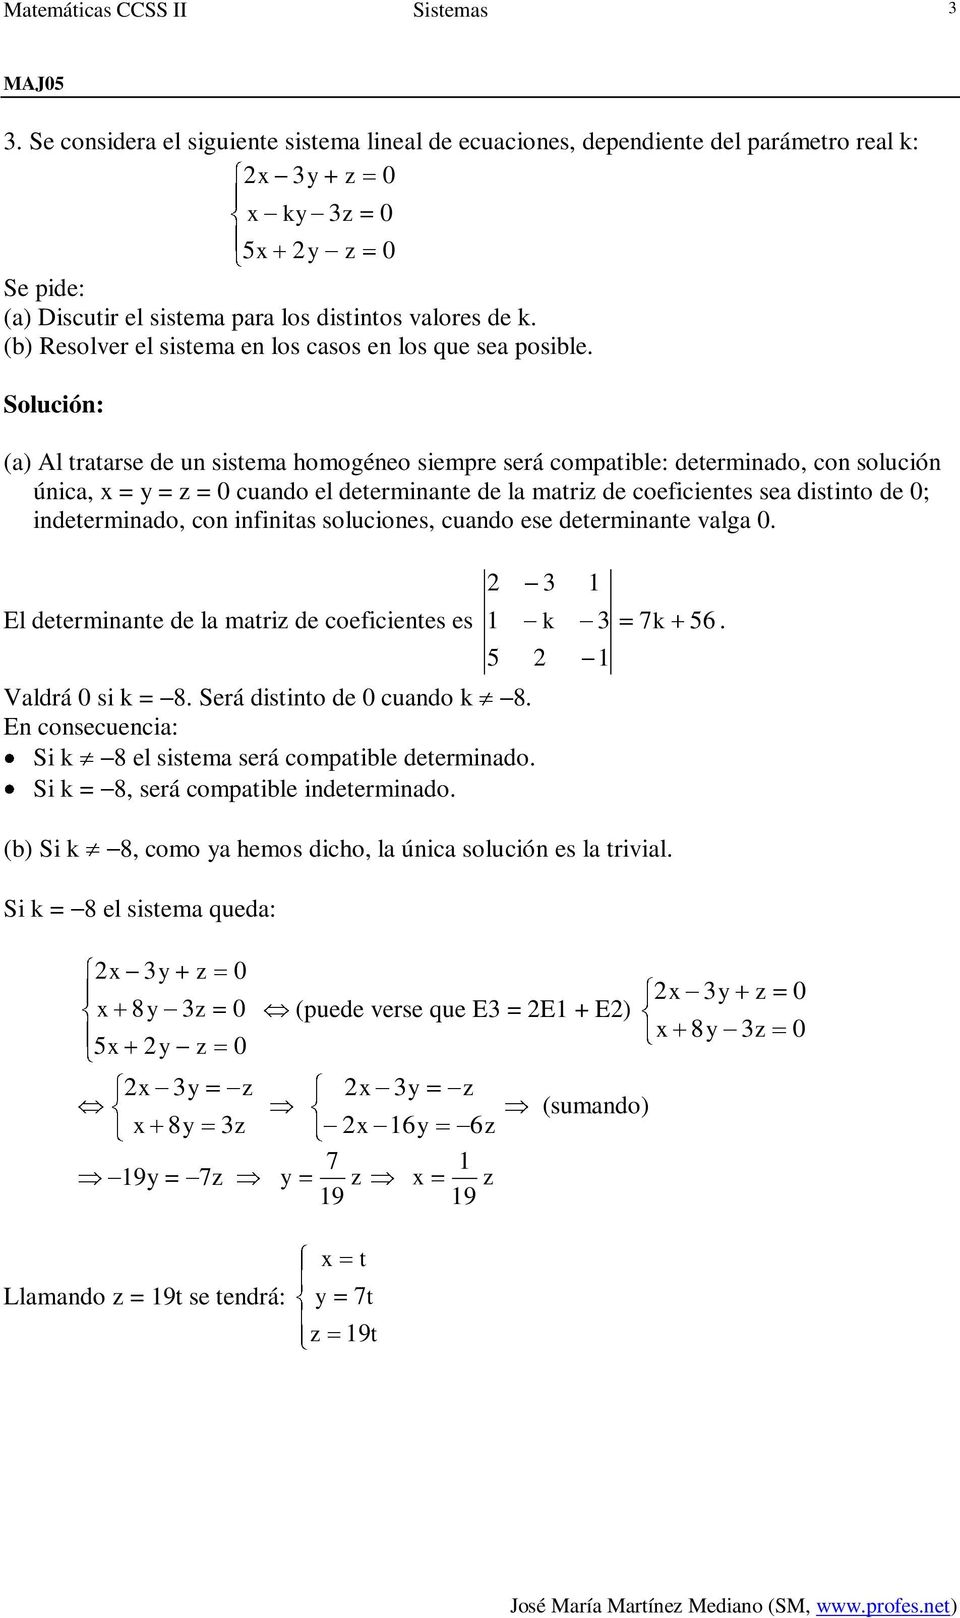 (a) Al tratarse de un sistema homogéneo siempre será compatible: determinado, con solución única, = = = cuando el determinante de la matri de coeficientes sea distinto de ; indeterminado, con